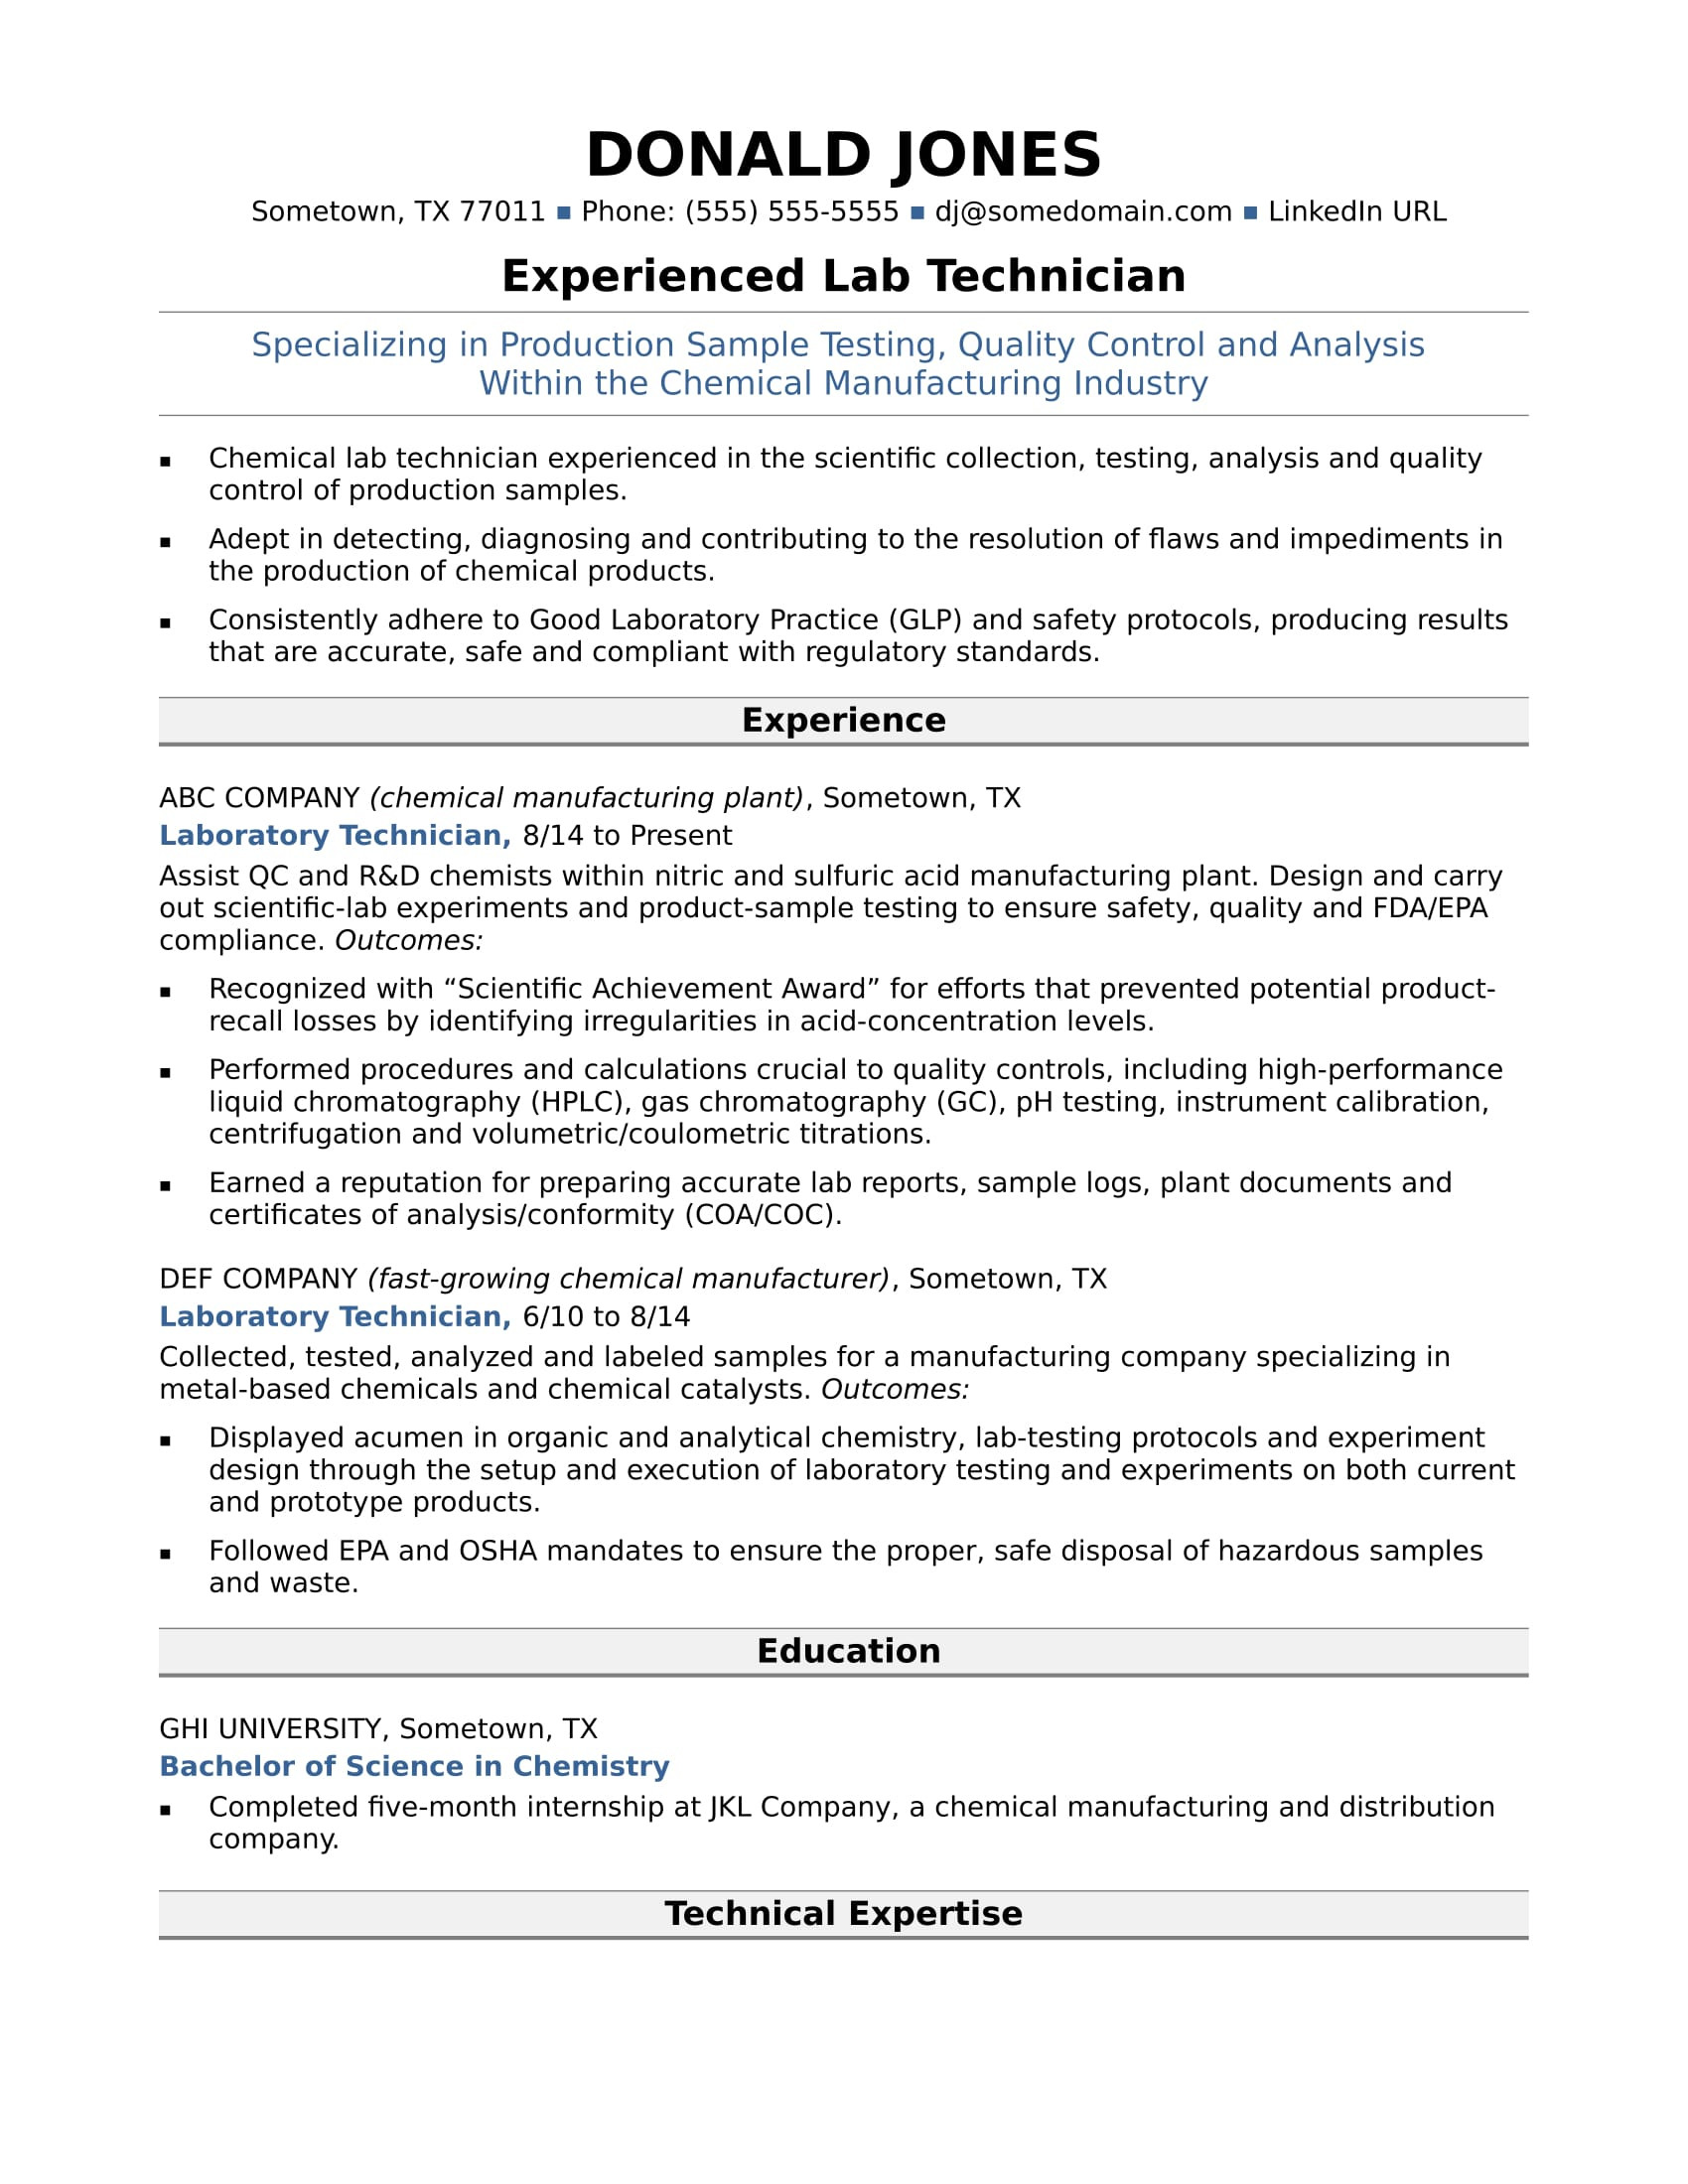 Sample Skills for Medical Technologist Resume Senior Laboratory Technician Resume Sample Monster.com